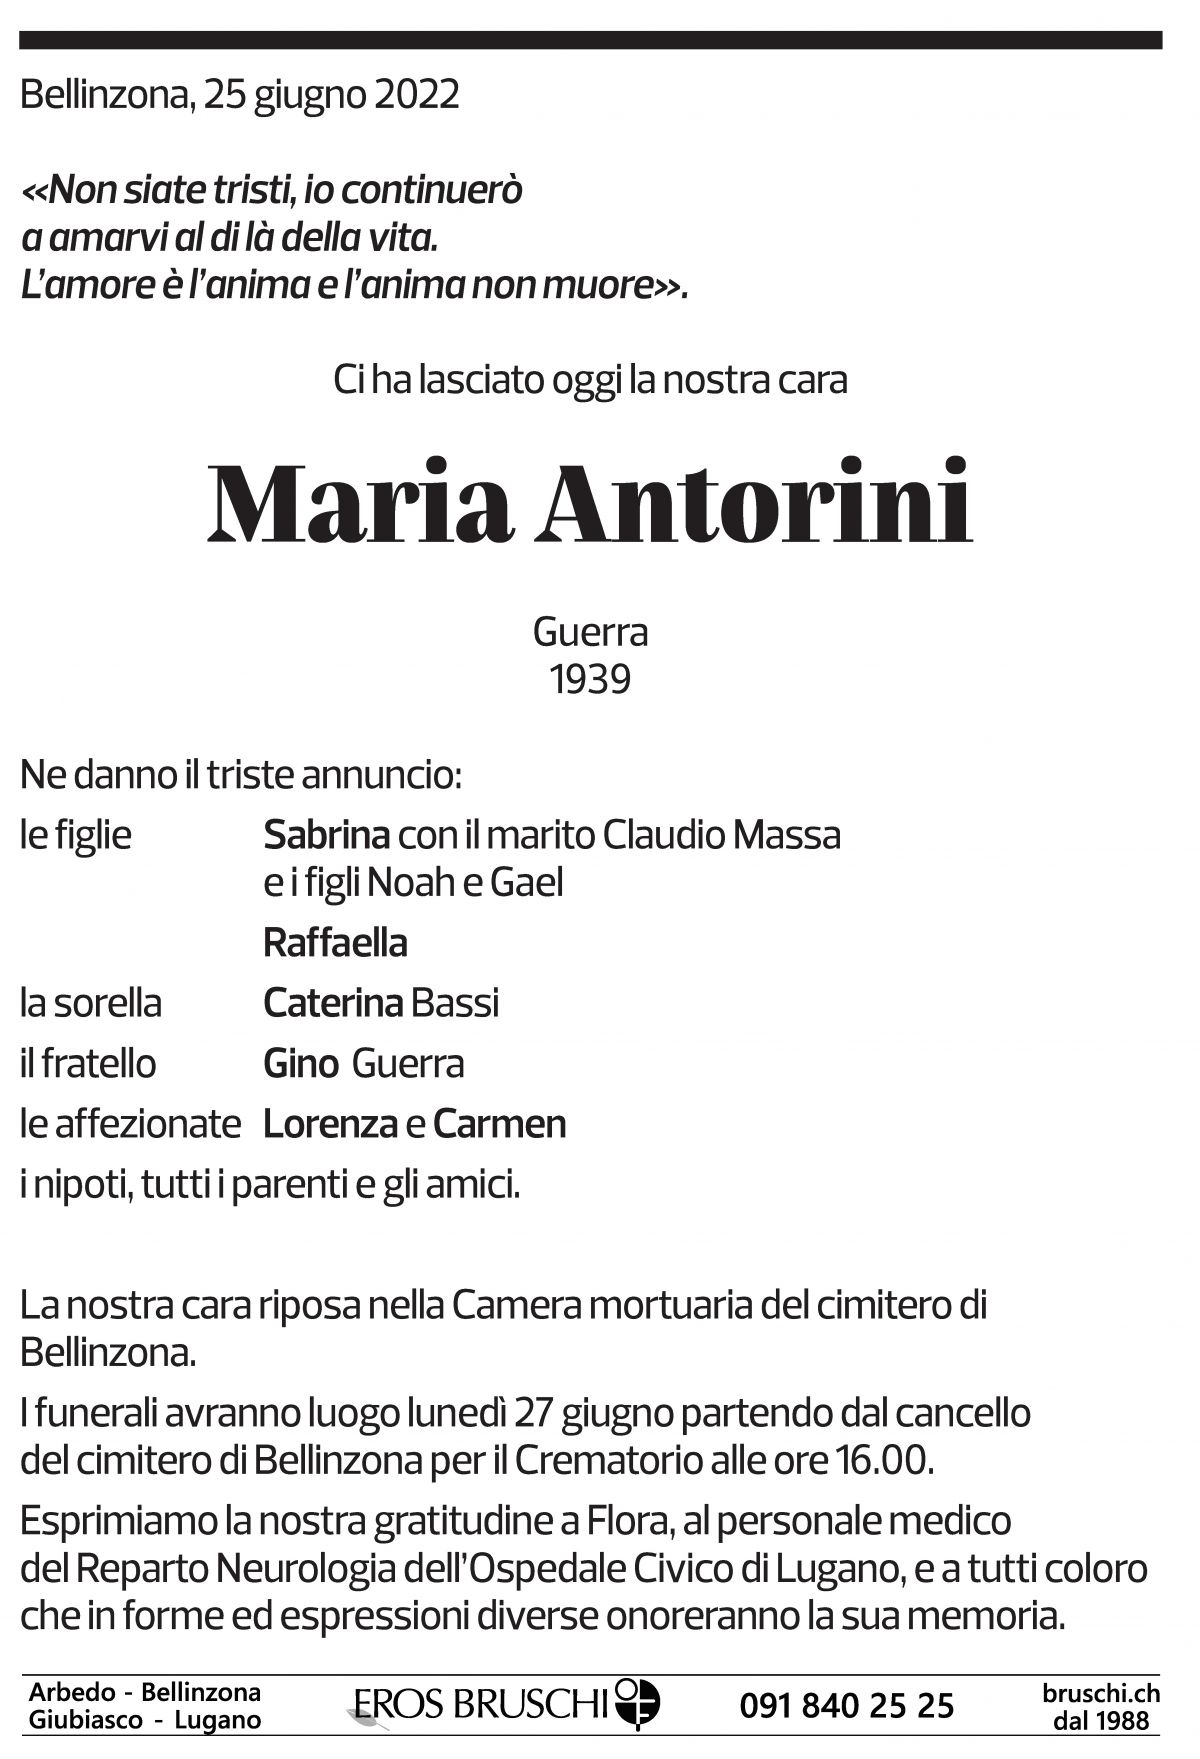 Annuncio funebre Maria Antorini